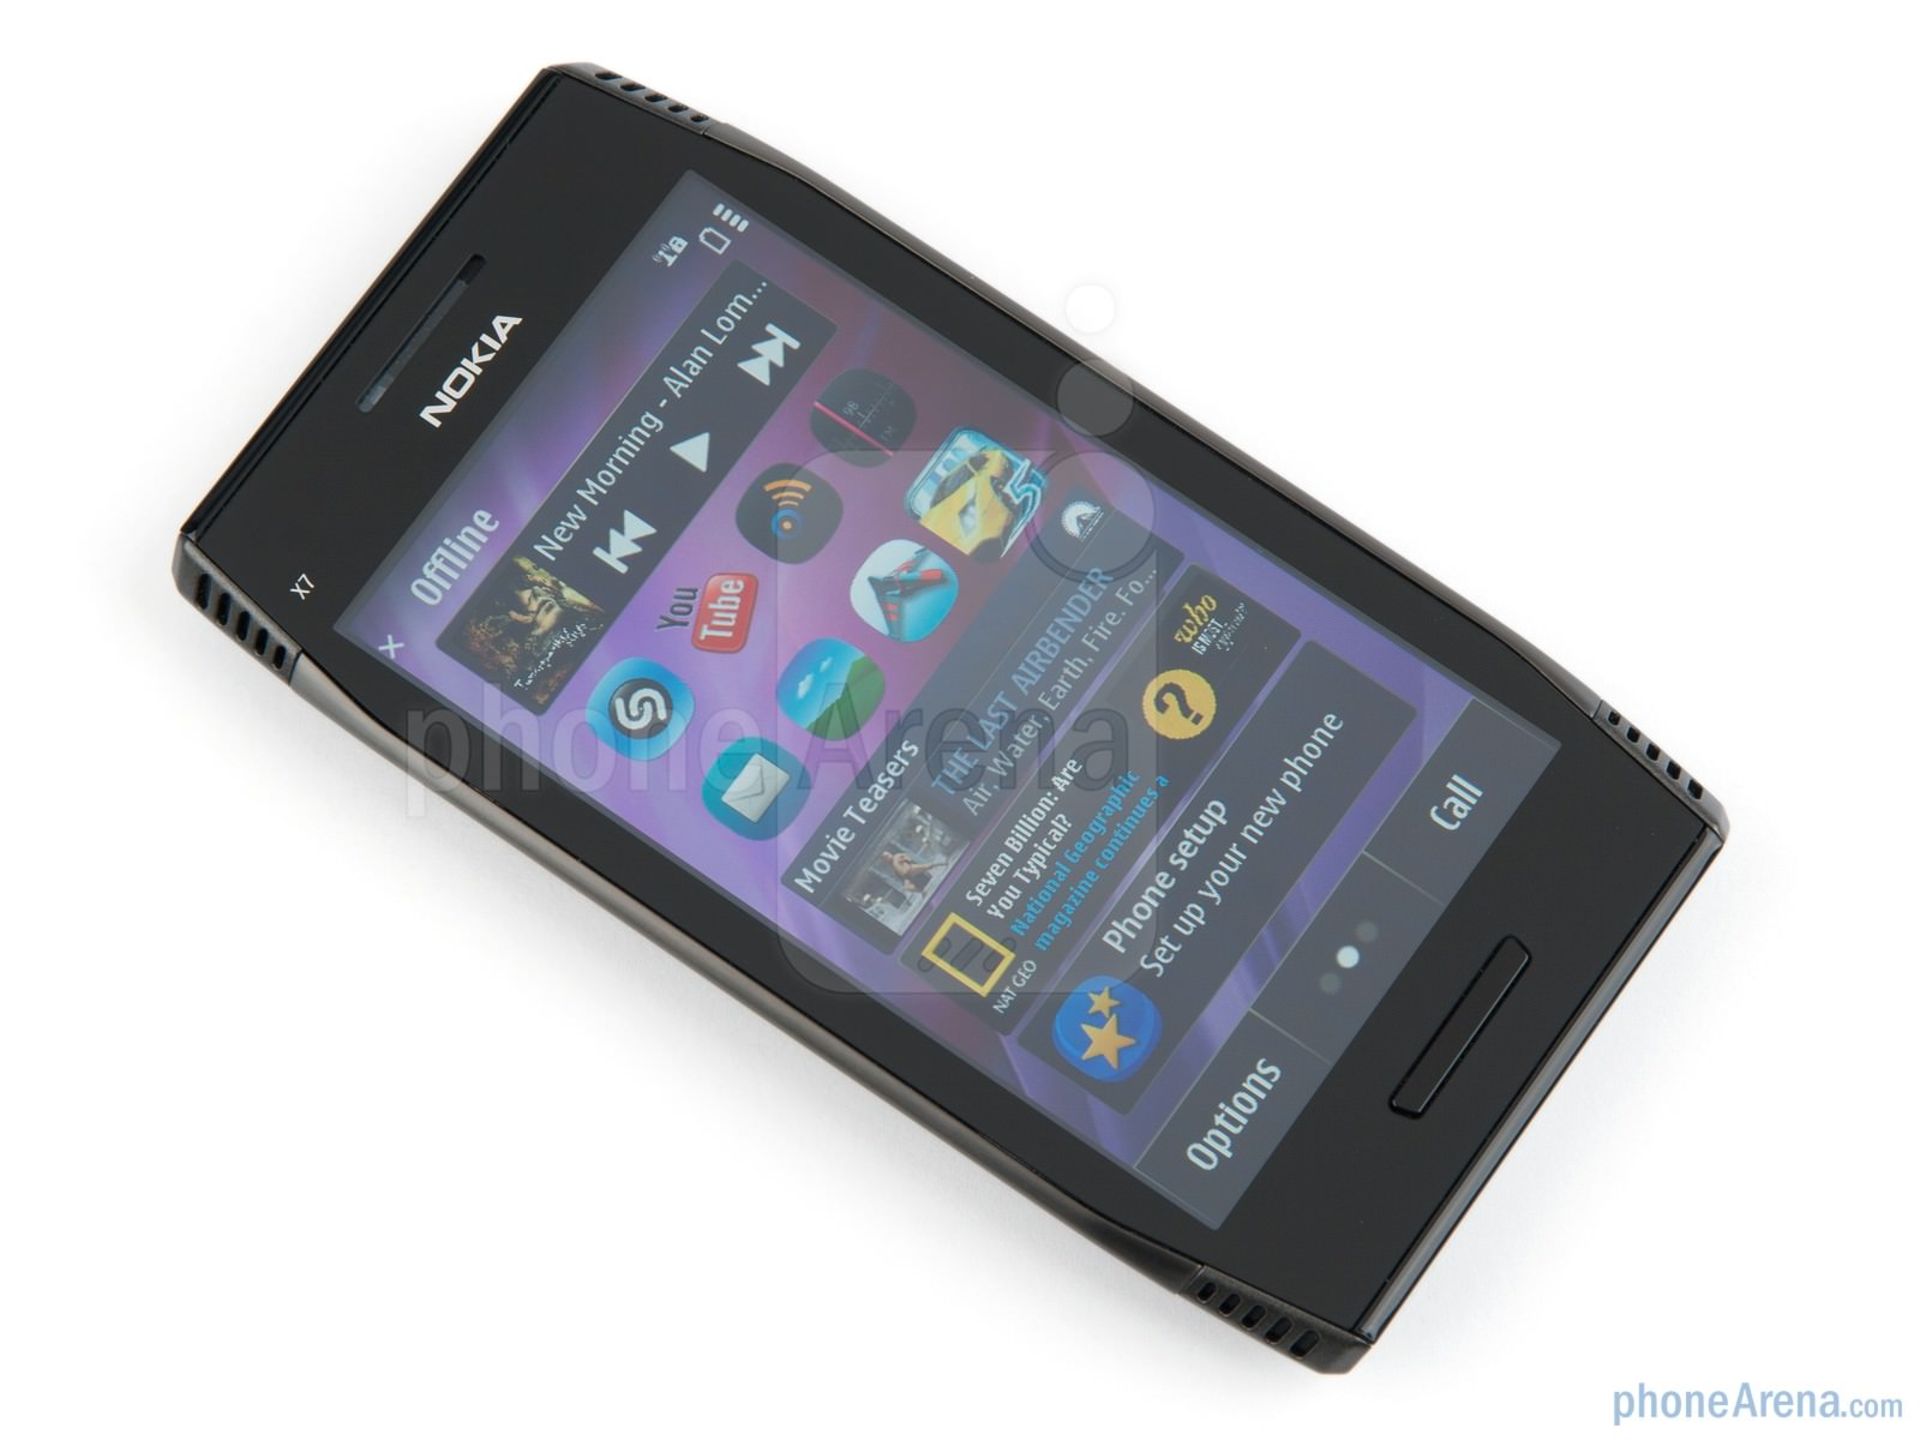 The Nokia X7